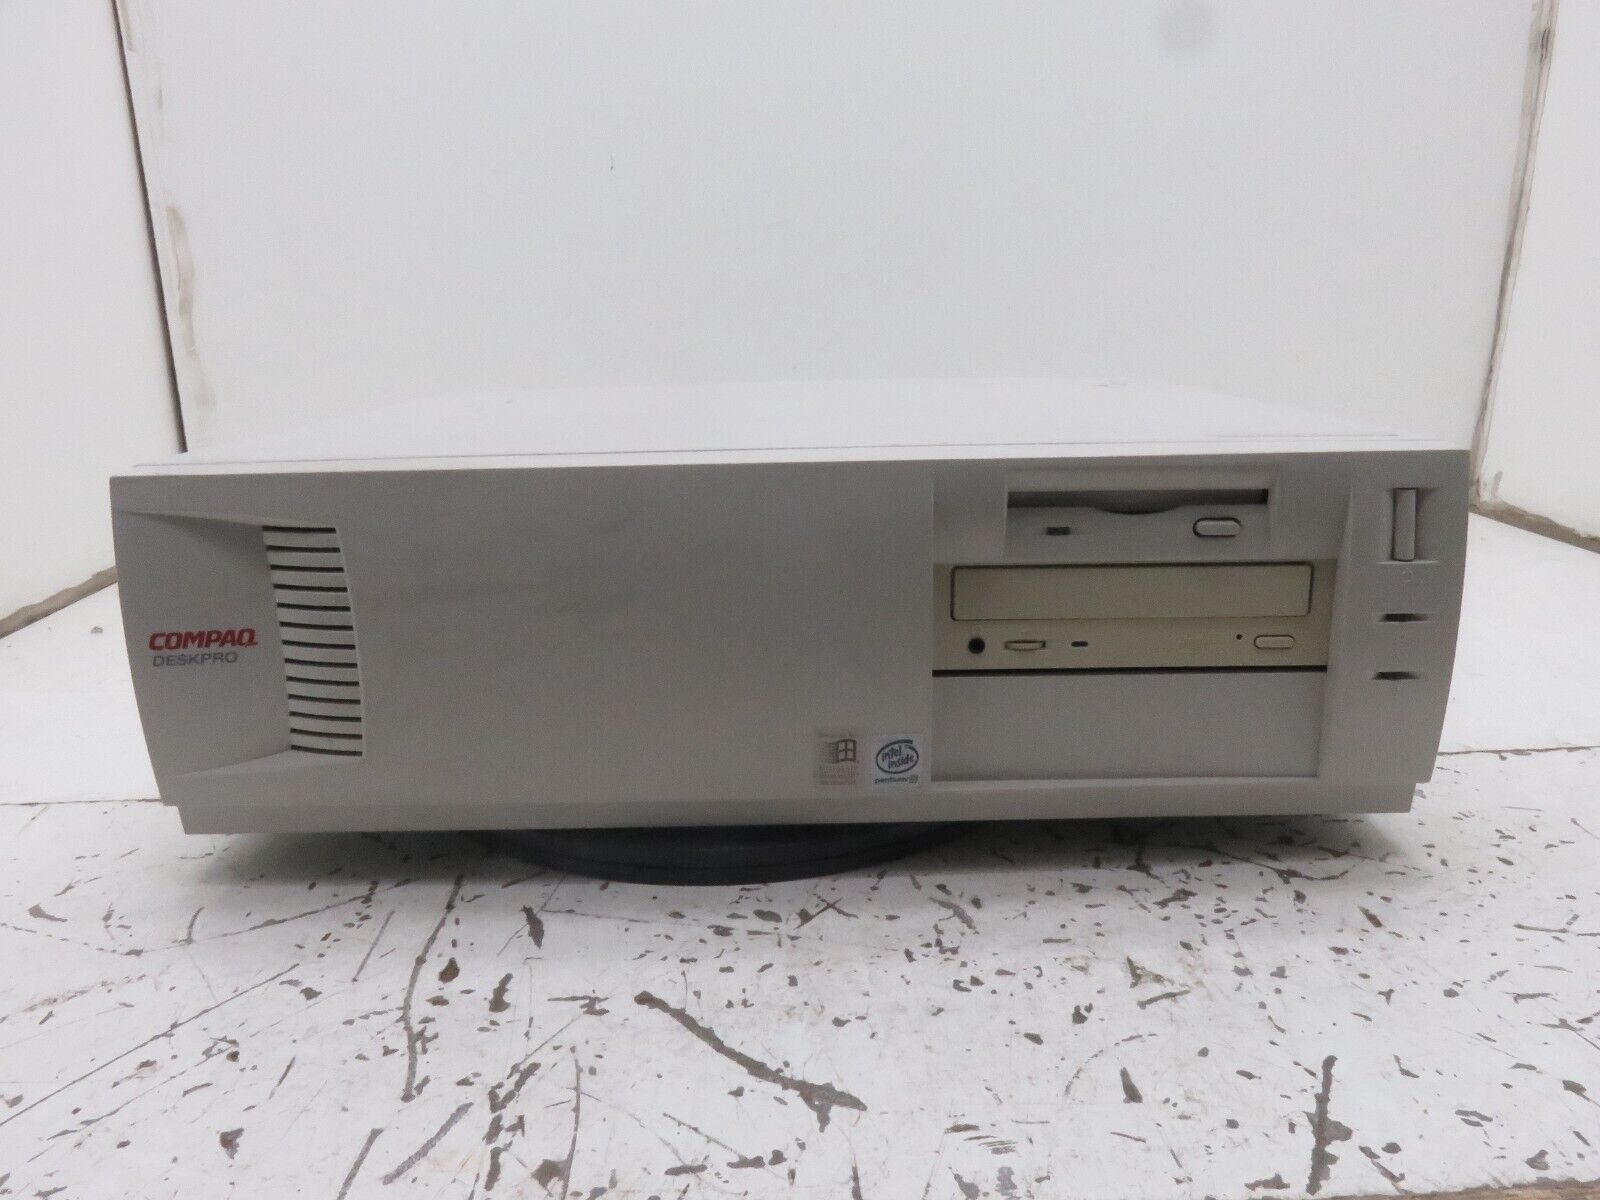 Compaq Deskpro EN Desktop Computer Intel Pentium 3 PIII 500MHz 128MB Ram No HDD